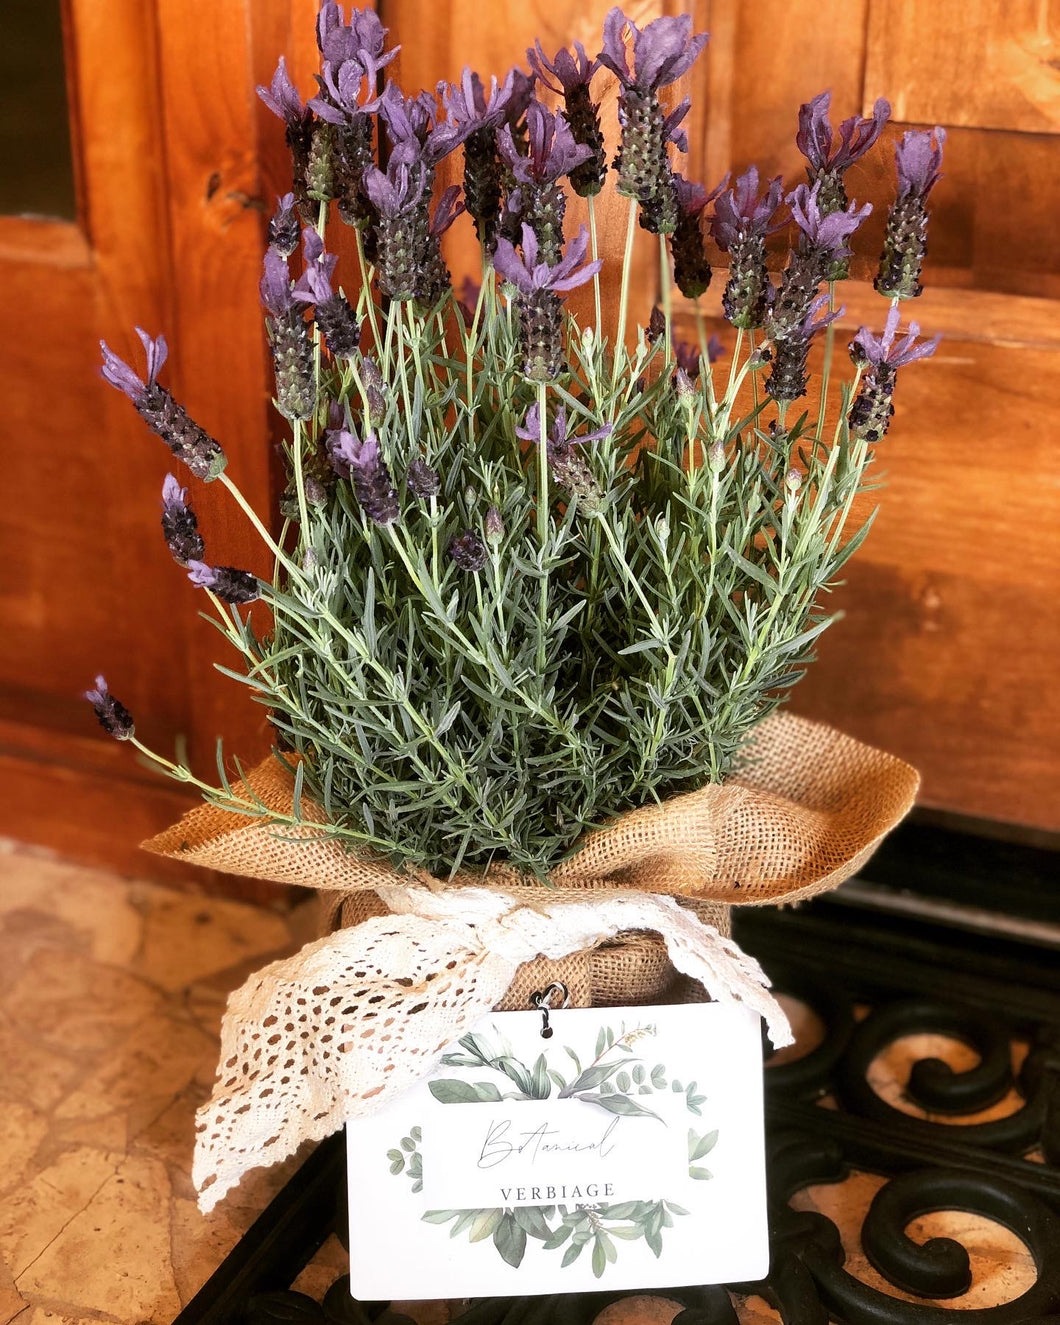 the lavender plant.